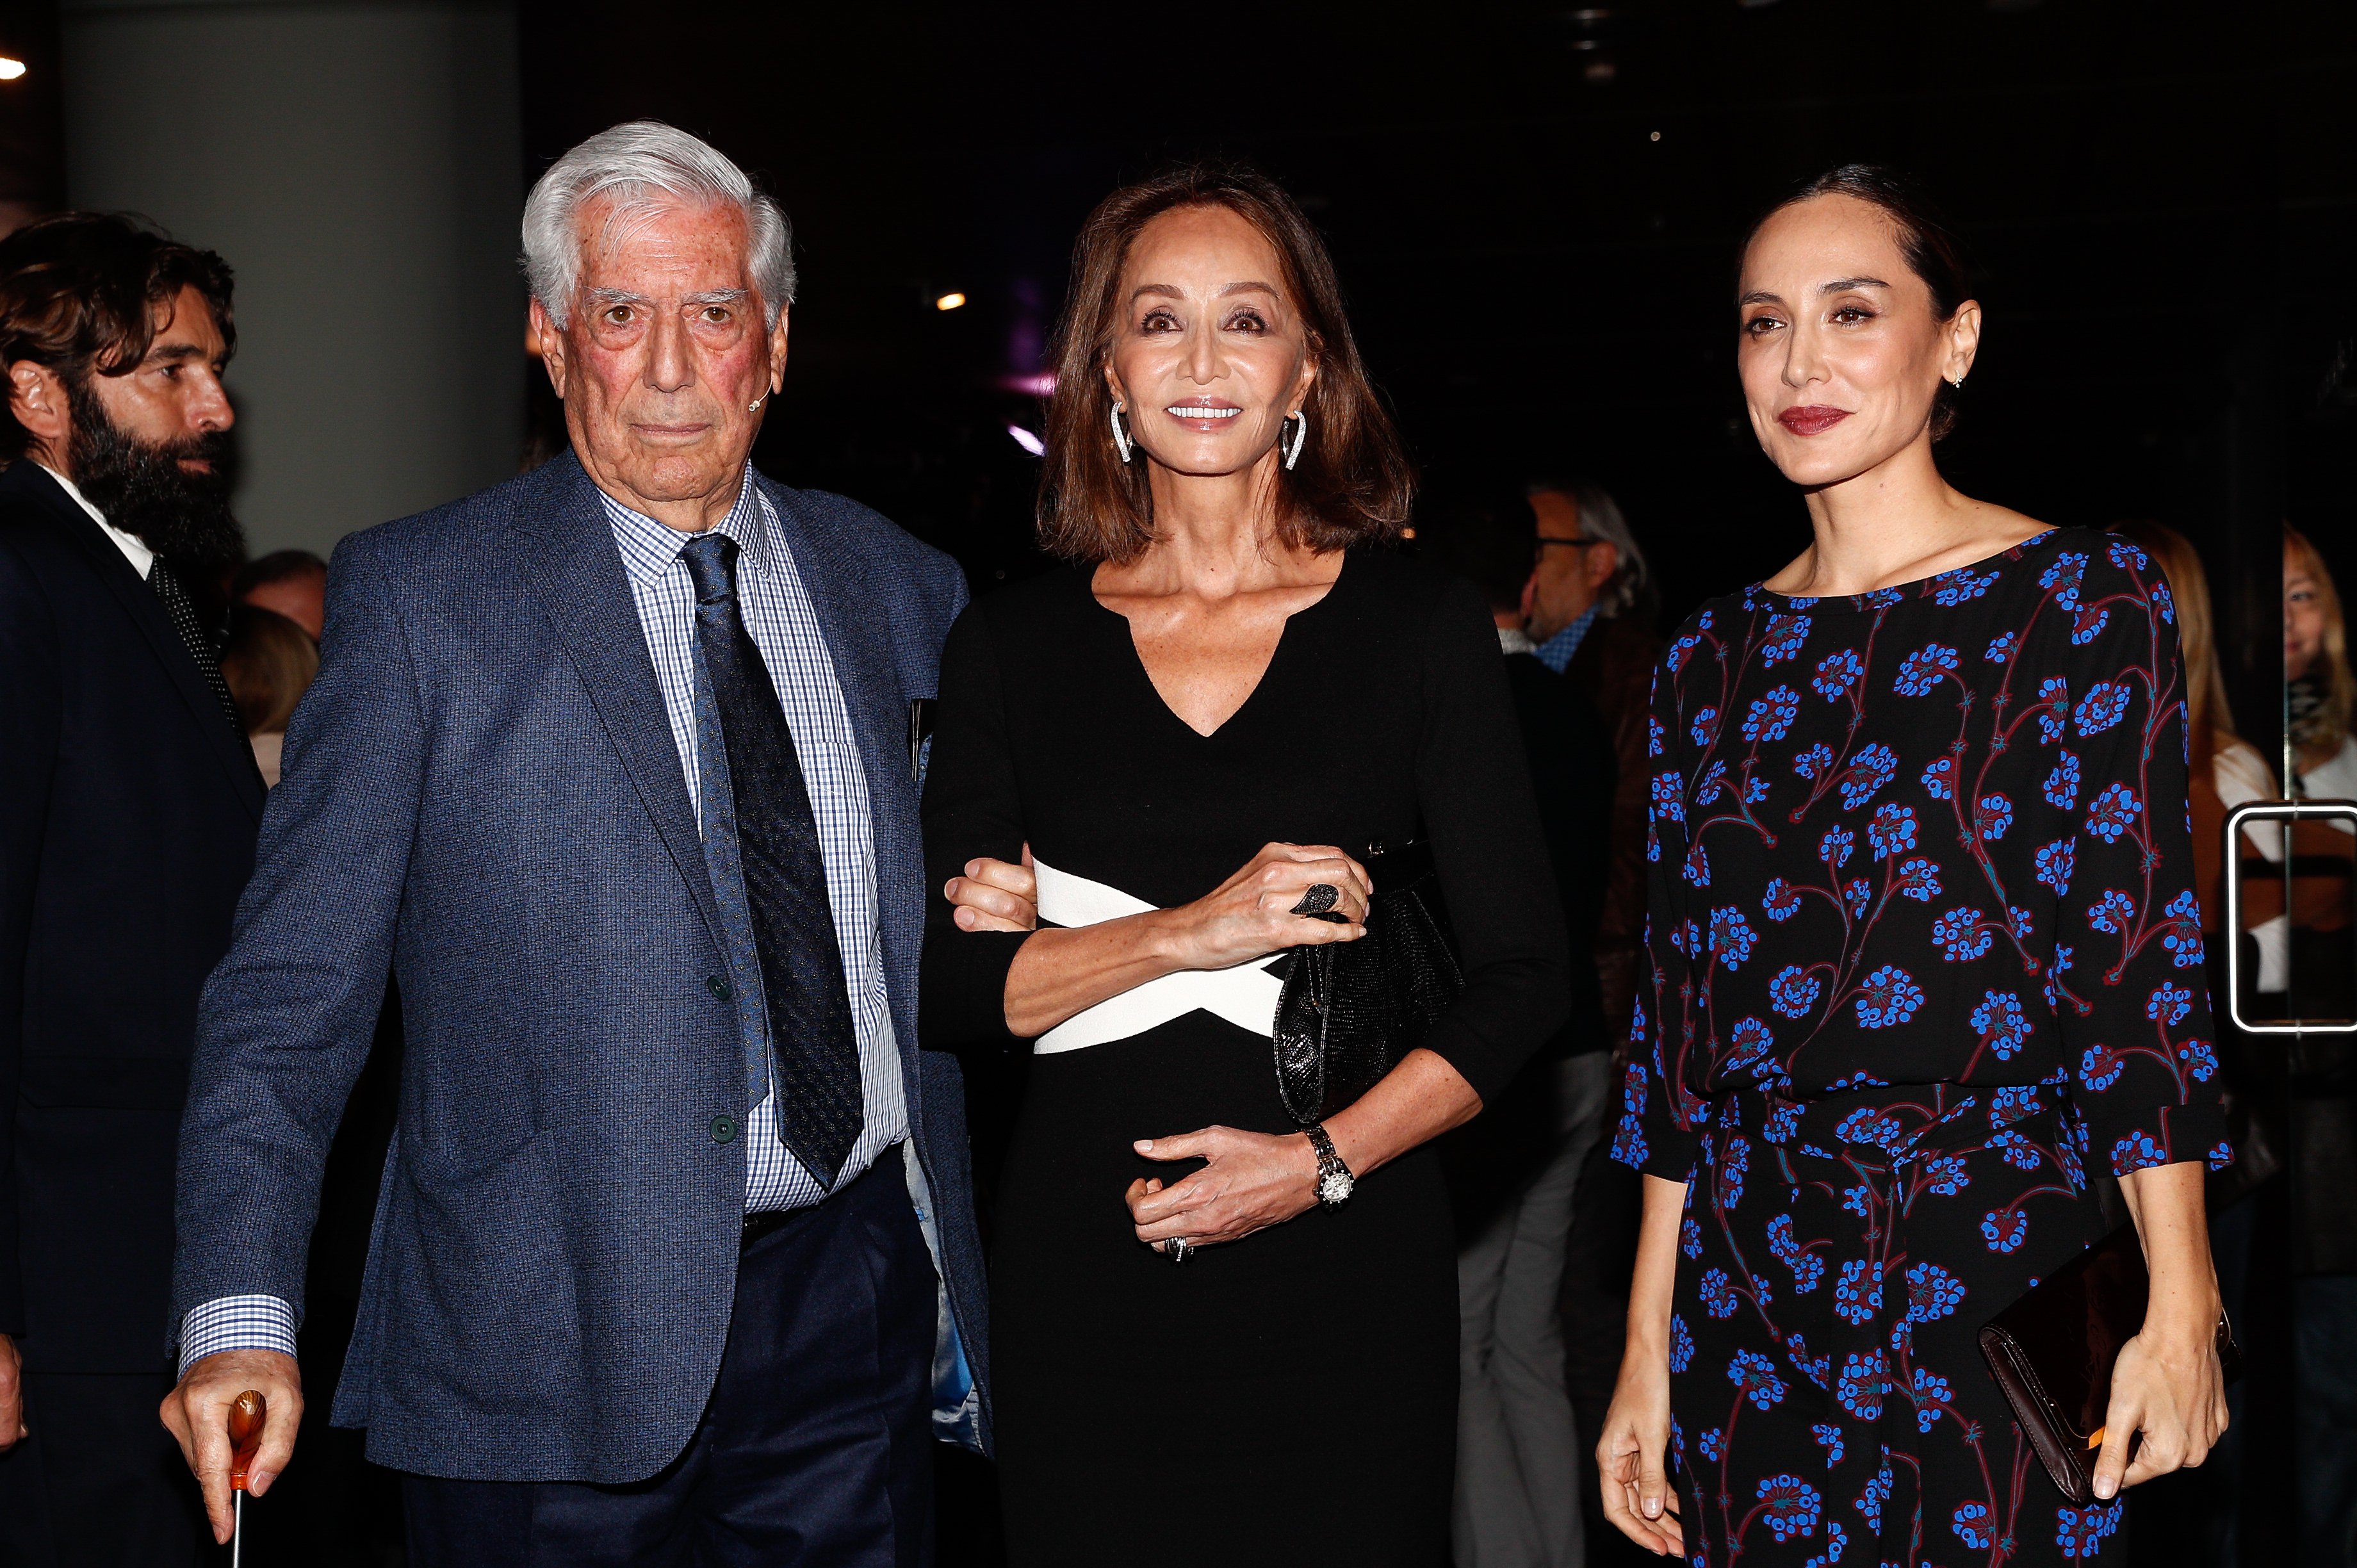 Vargas Llosa humilia Isabel Preysler i Tamara Falcó per la seva obsessió estètica